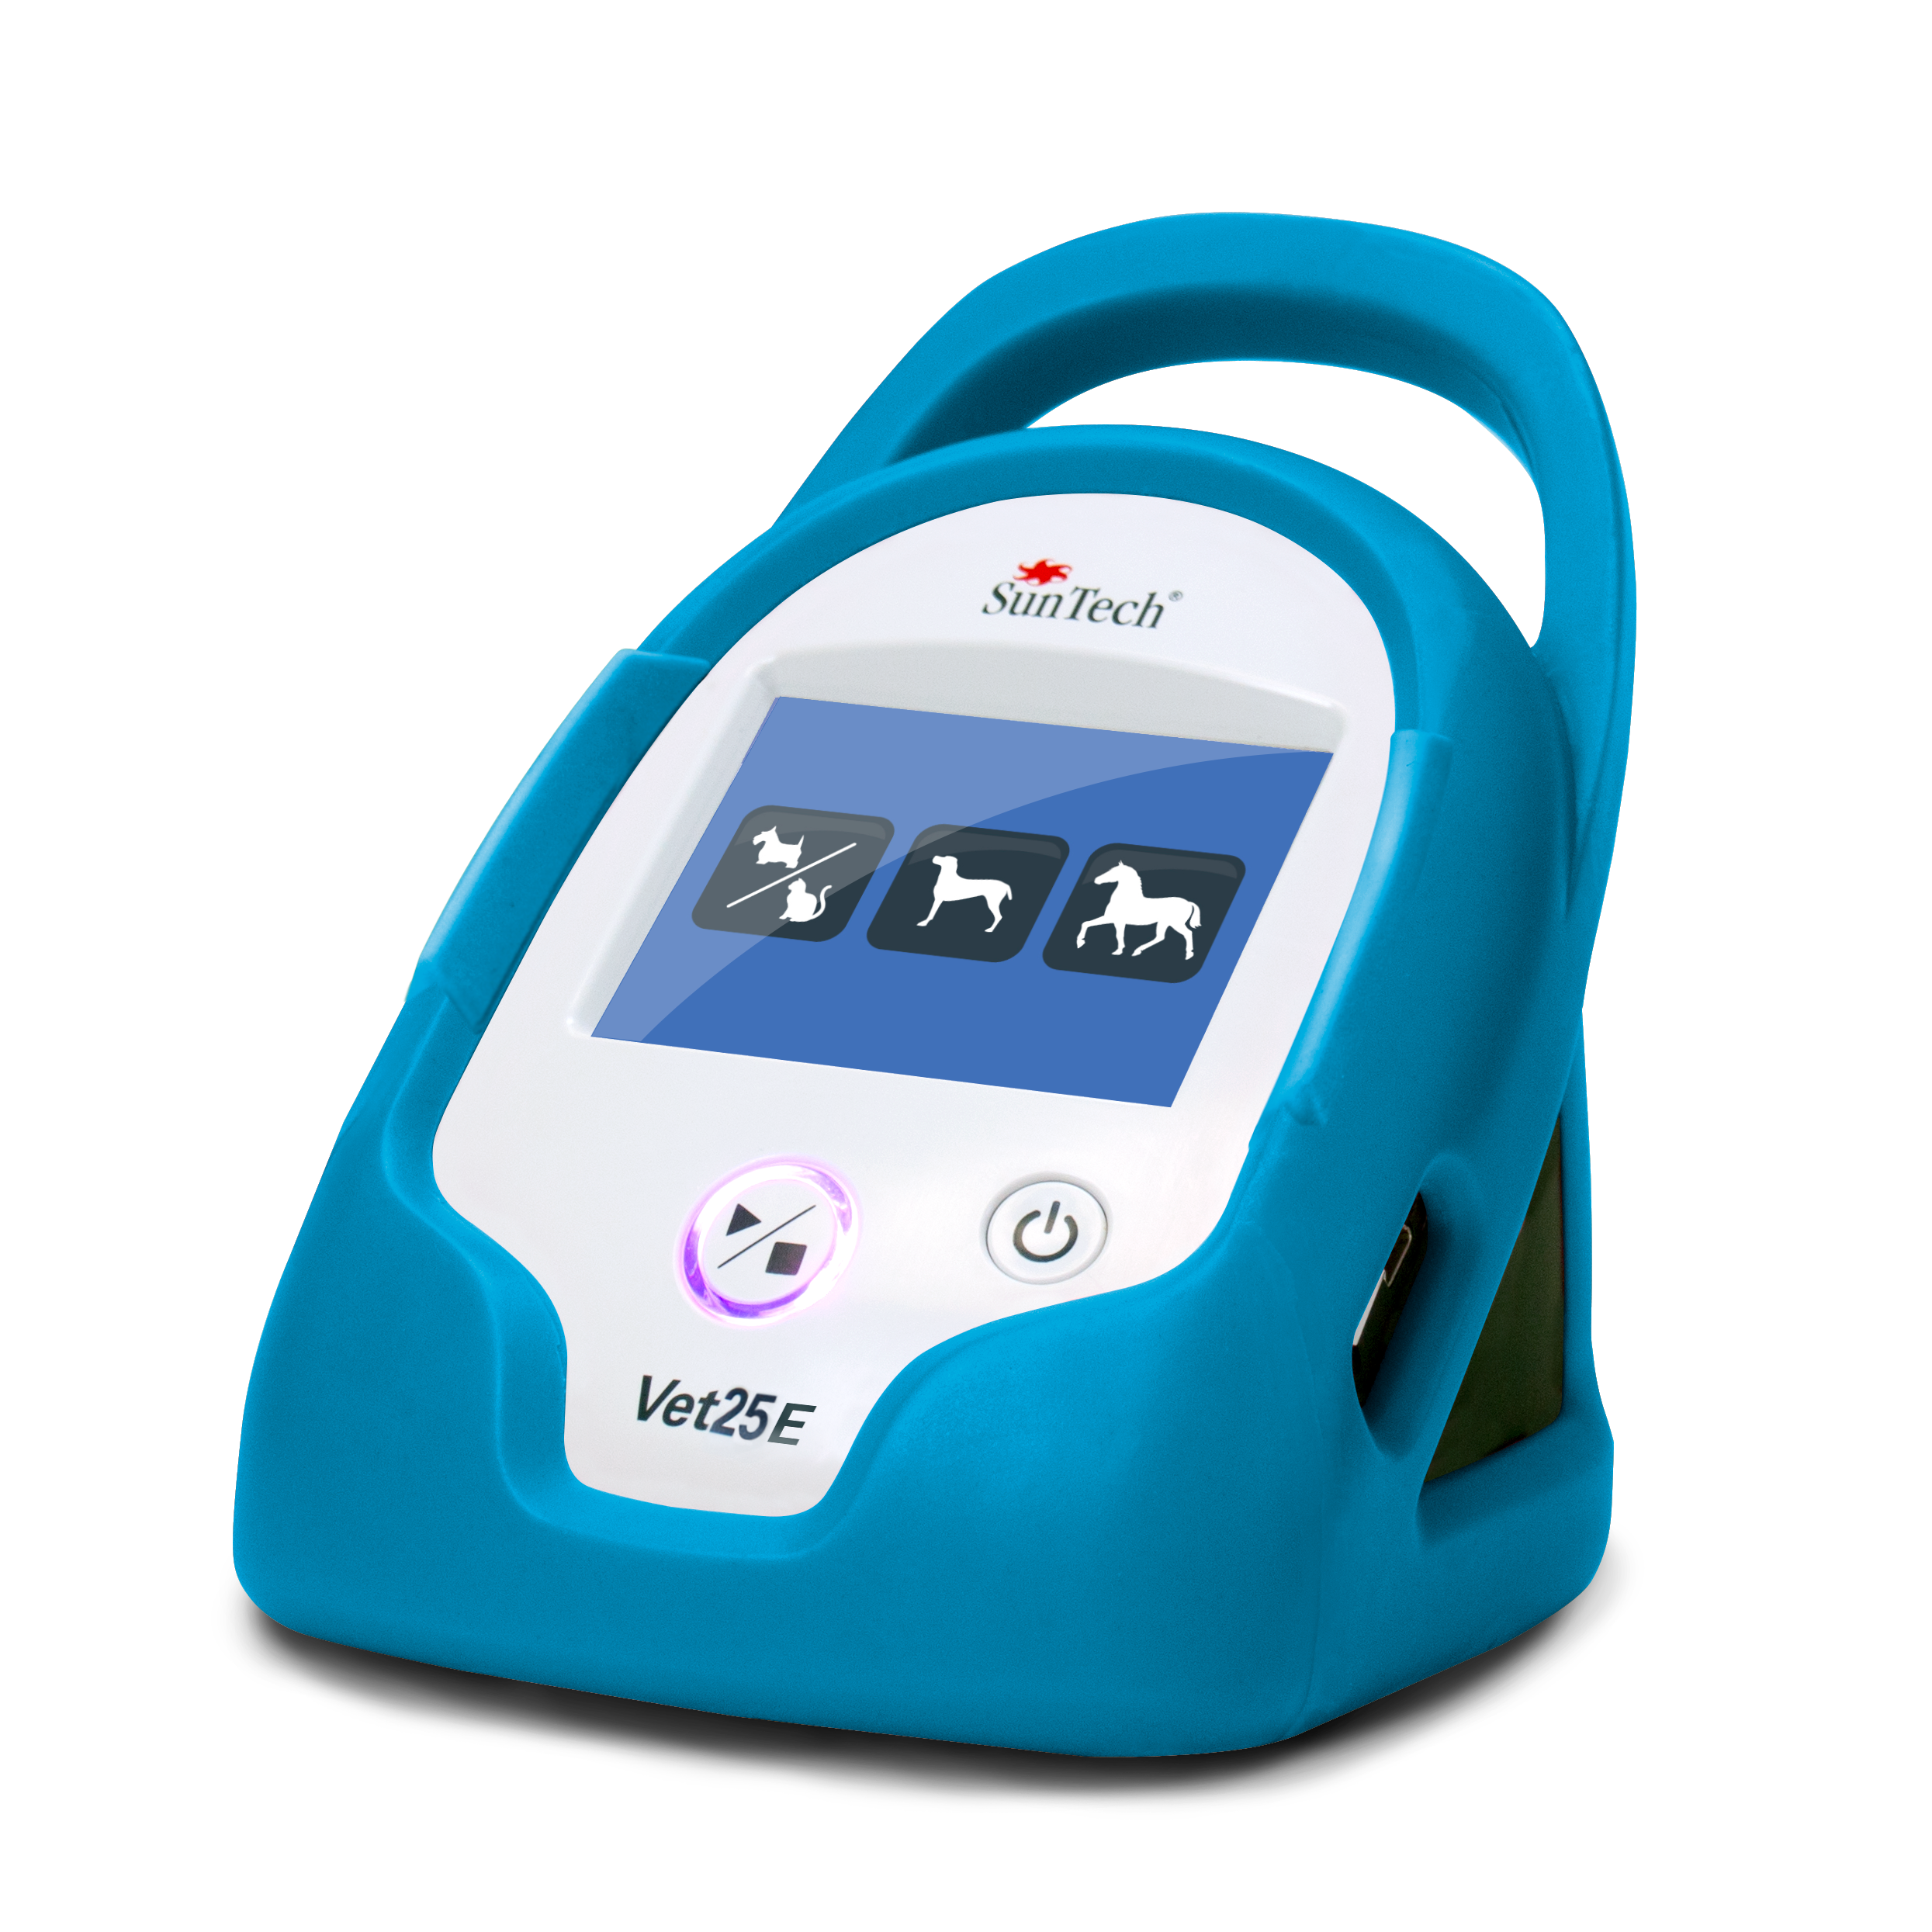 Suntech Vet25E & Vet30E Blood Pressure Monitor